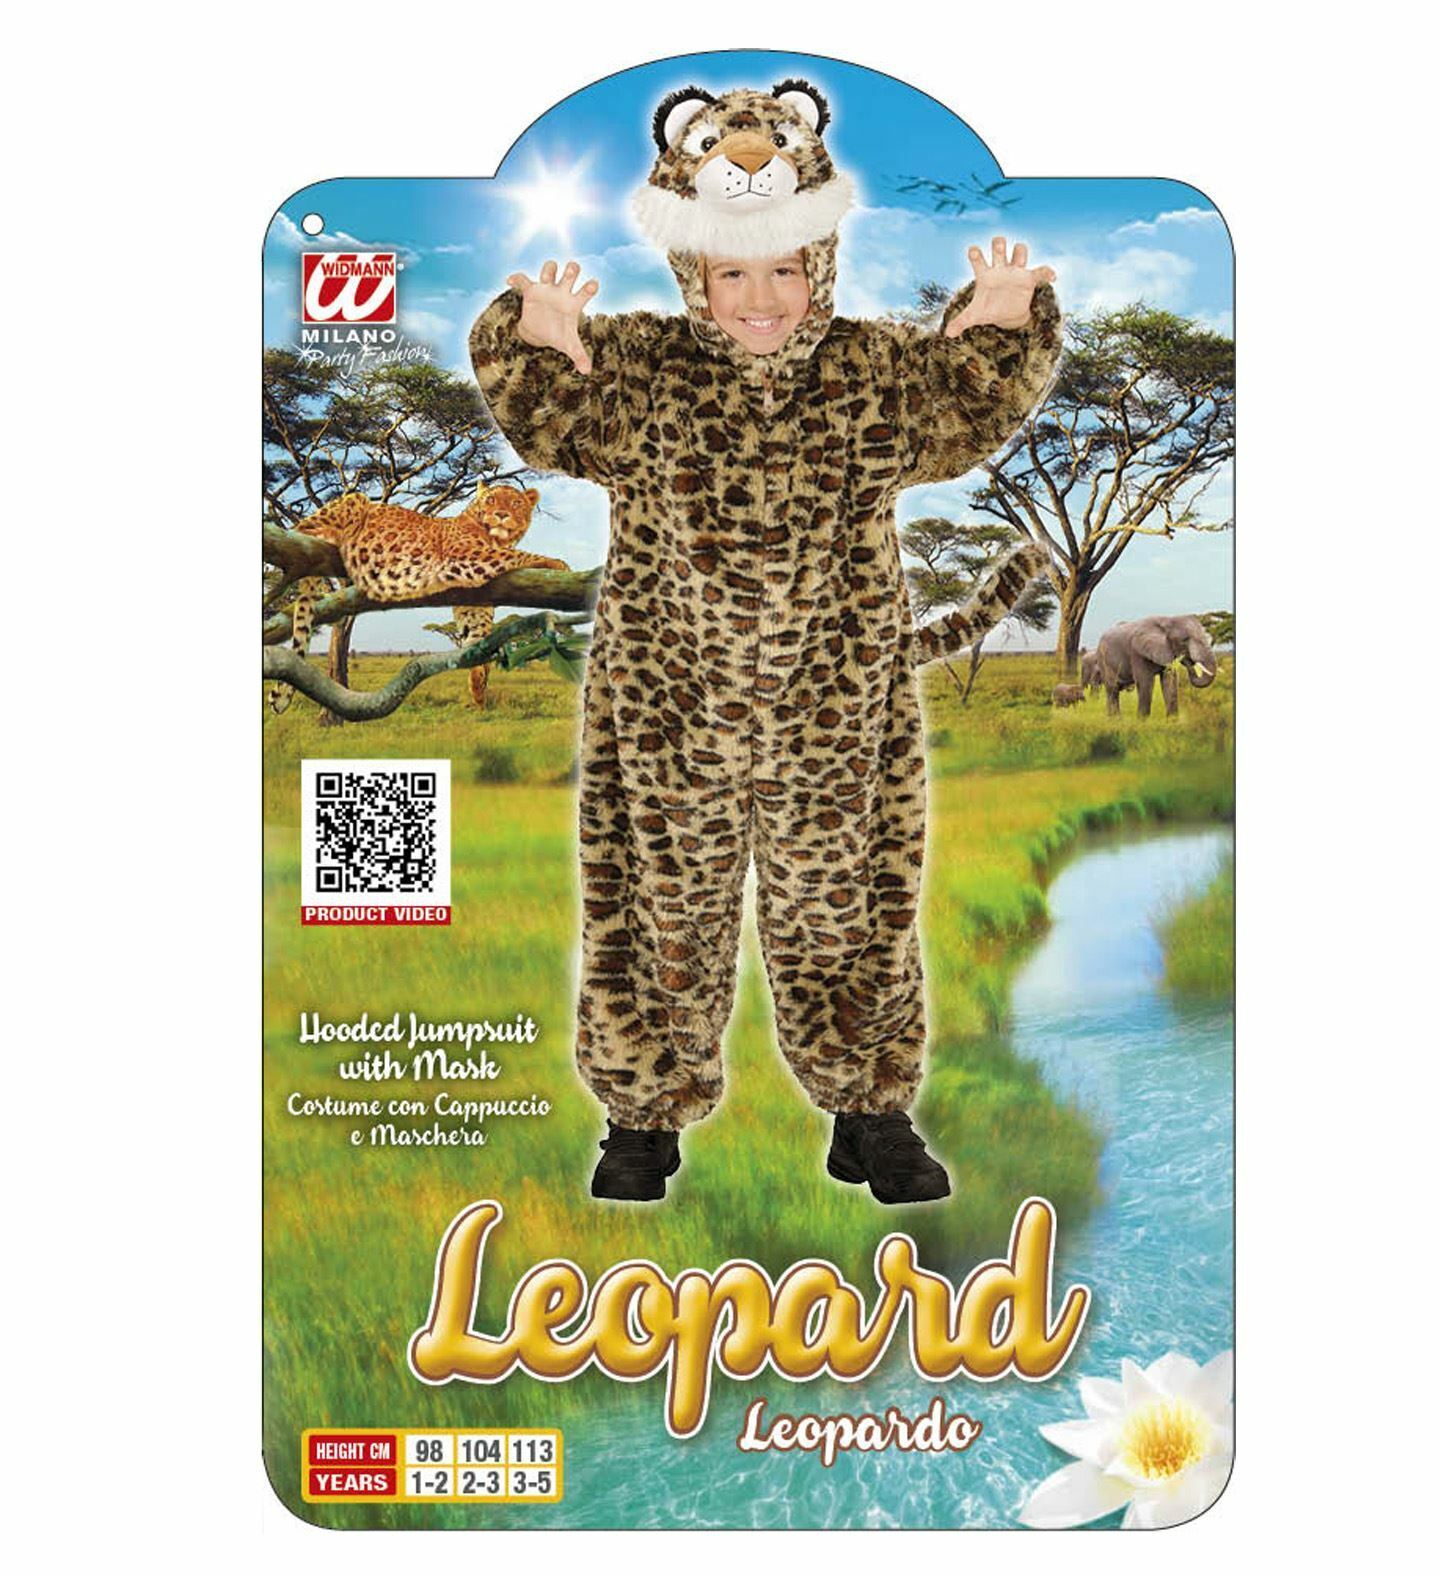 Leoparden Kinder Plüschkostüm Karneval Kleinkinder Jungen Mädchen Tiger Kostüm